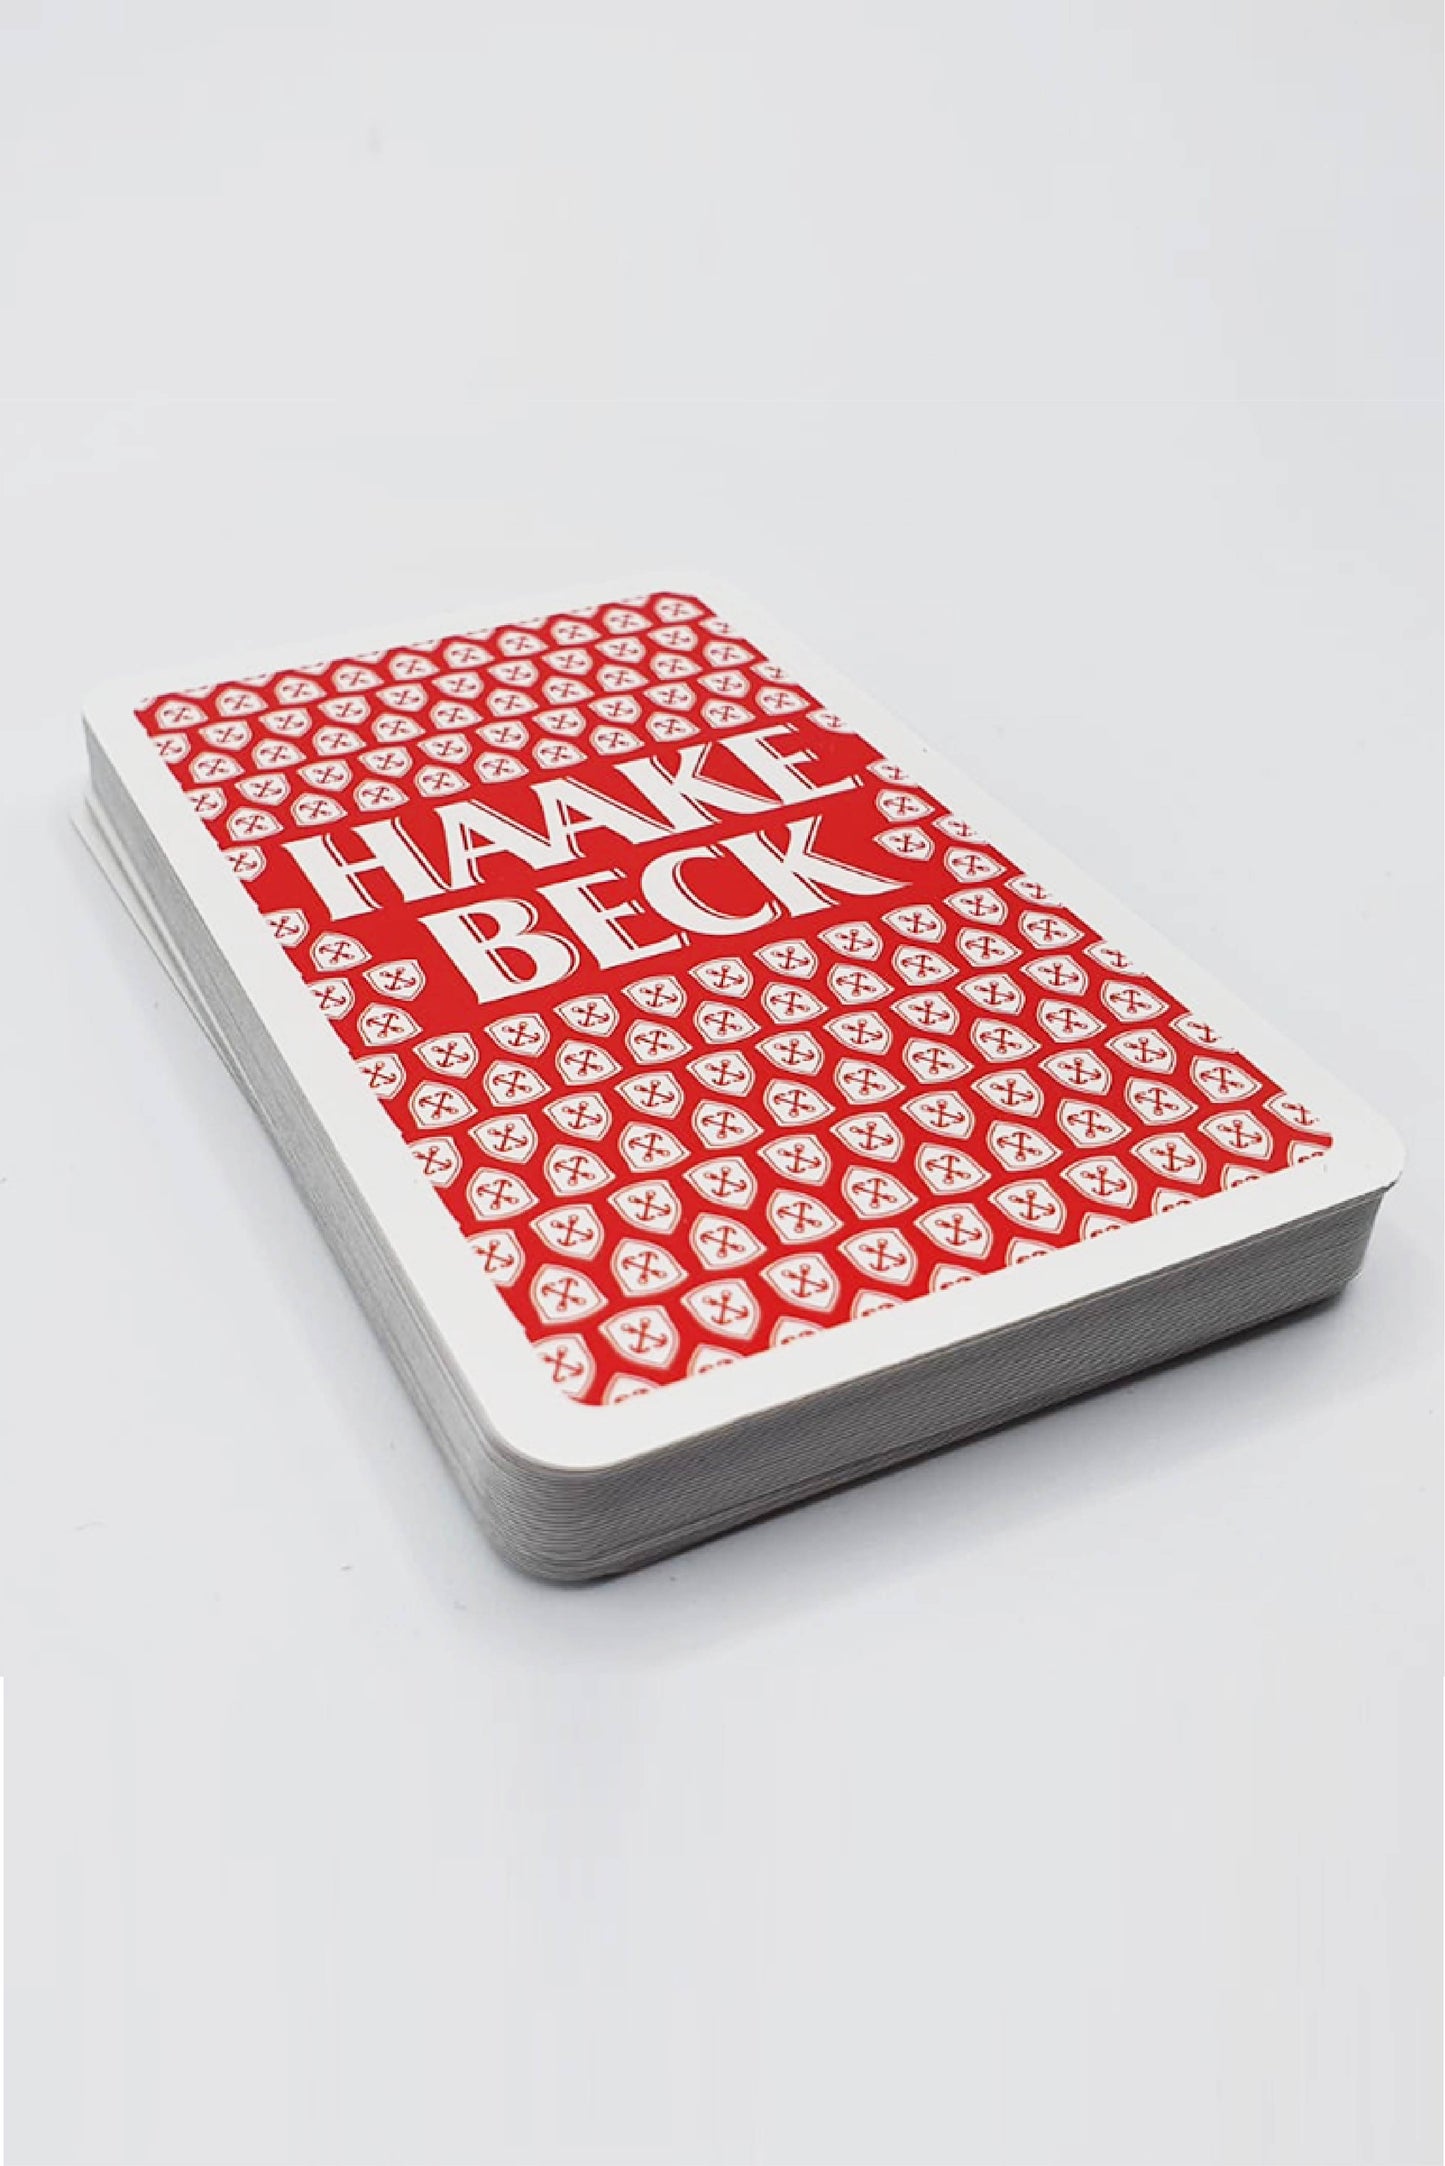 Haake-Beck Skat Spielkarten